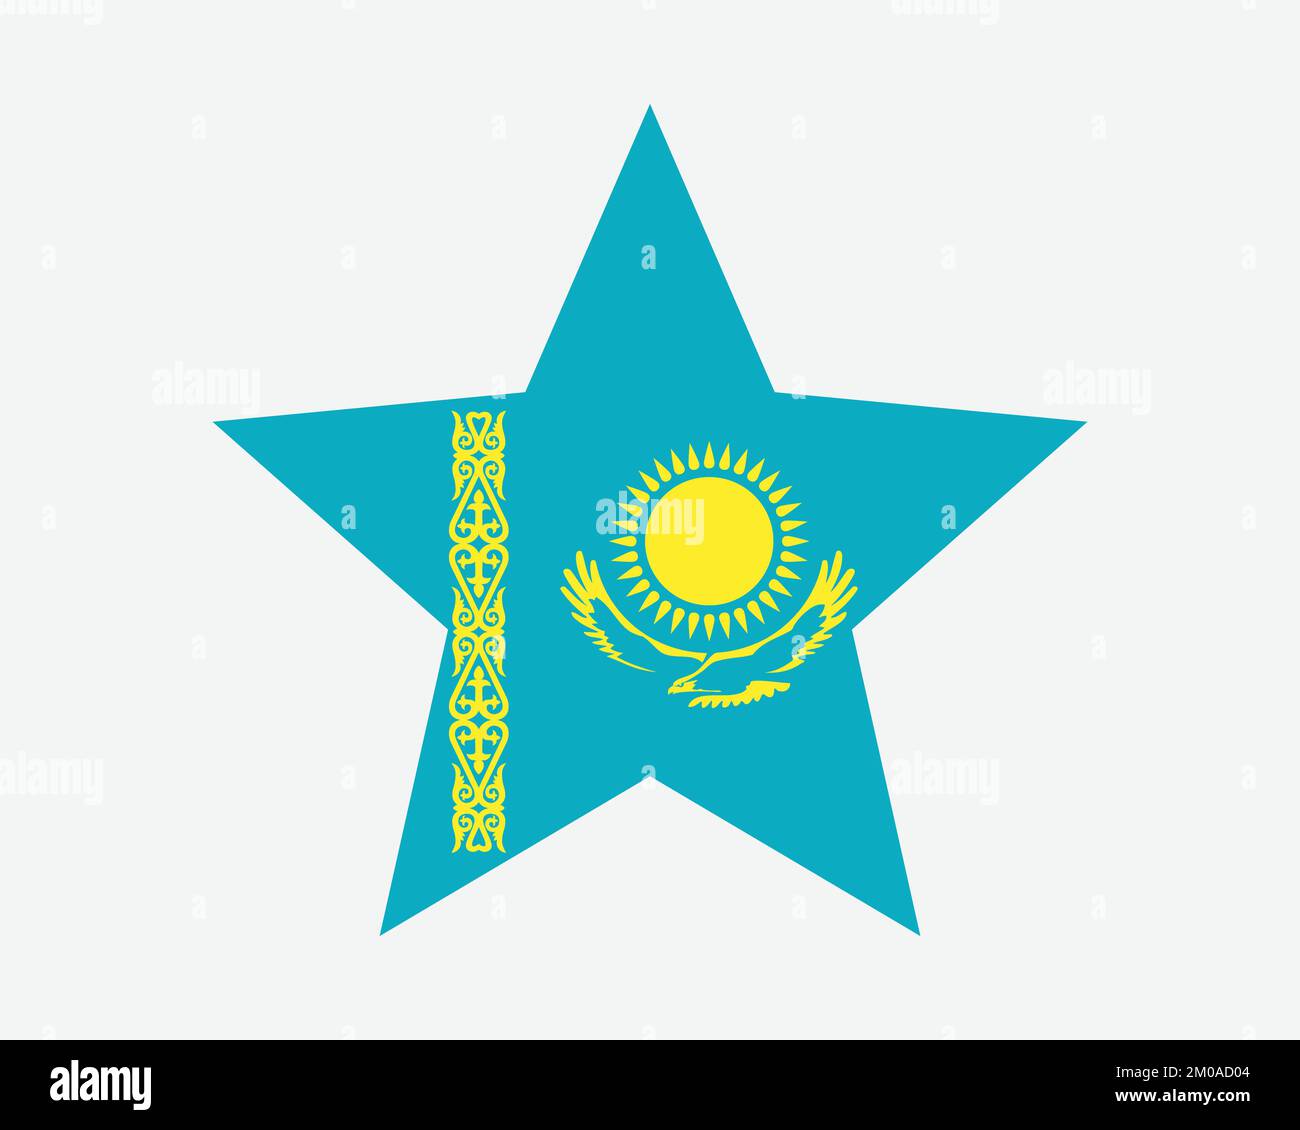 Kazakhstan Star Flag. Kazakistani Stella forma Bandiera. Country National Banner icona simbolo Vector Flat Illustrazione grafica Illustrazione Vettoriale